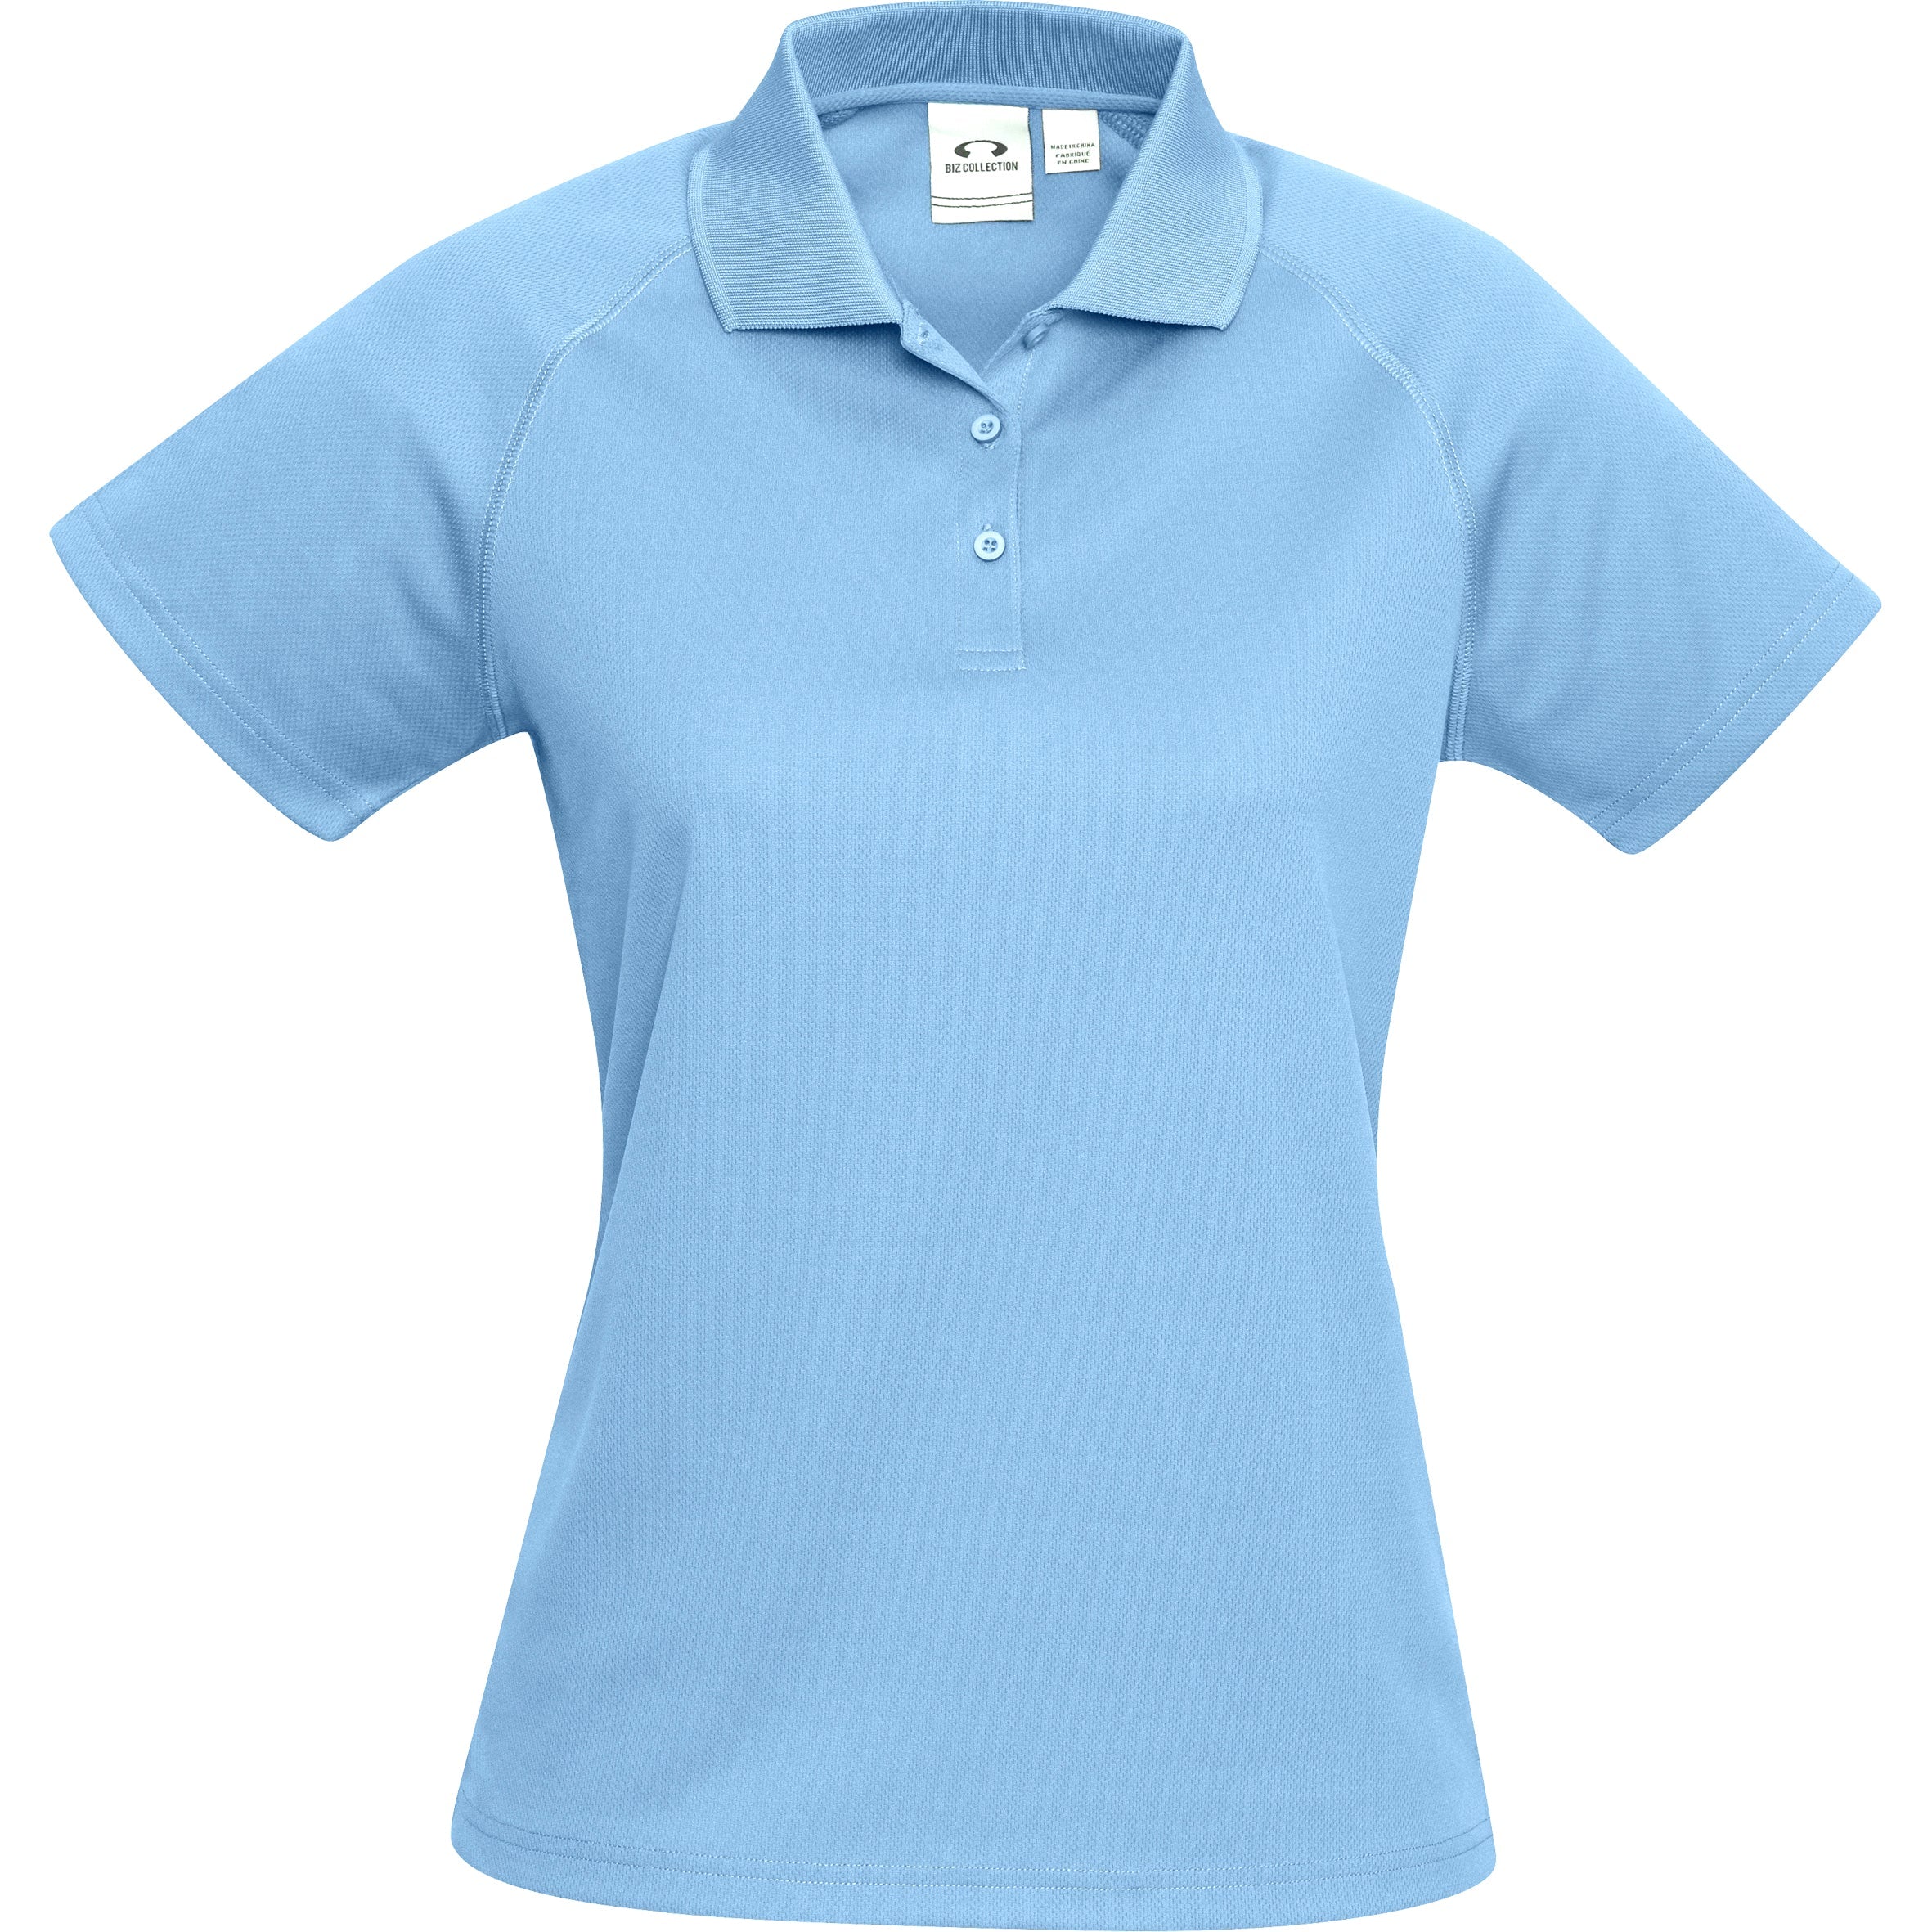 Ladies Sprint Golf Shirt - Blue Only-2XL-Light Blue-LB